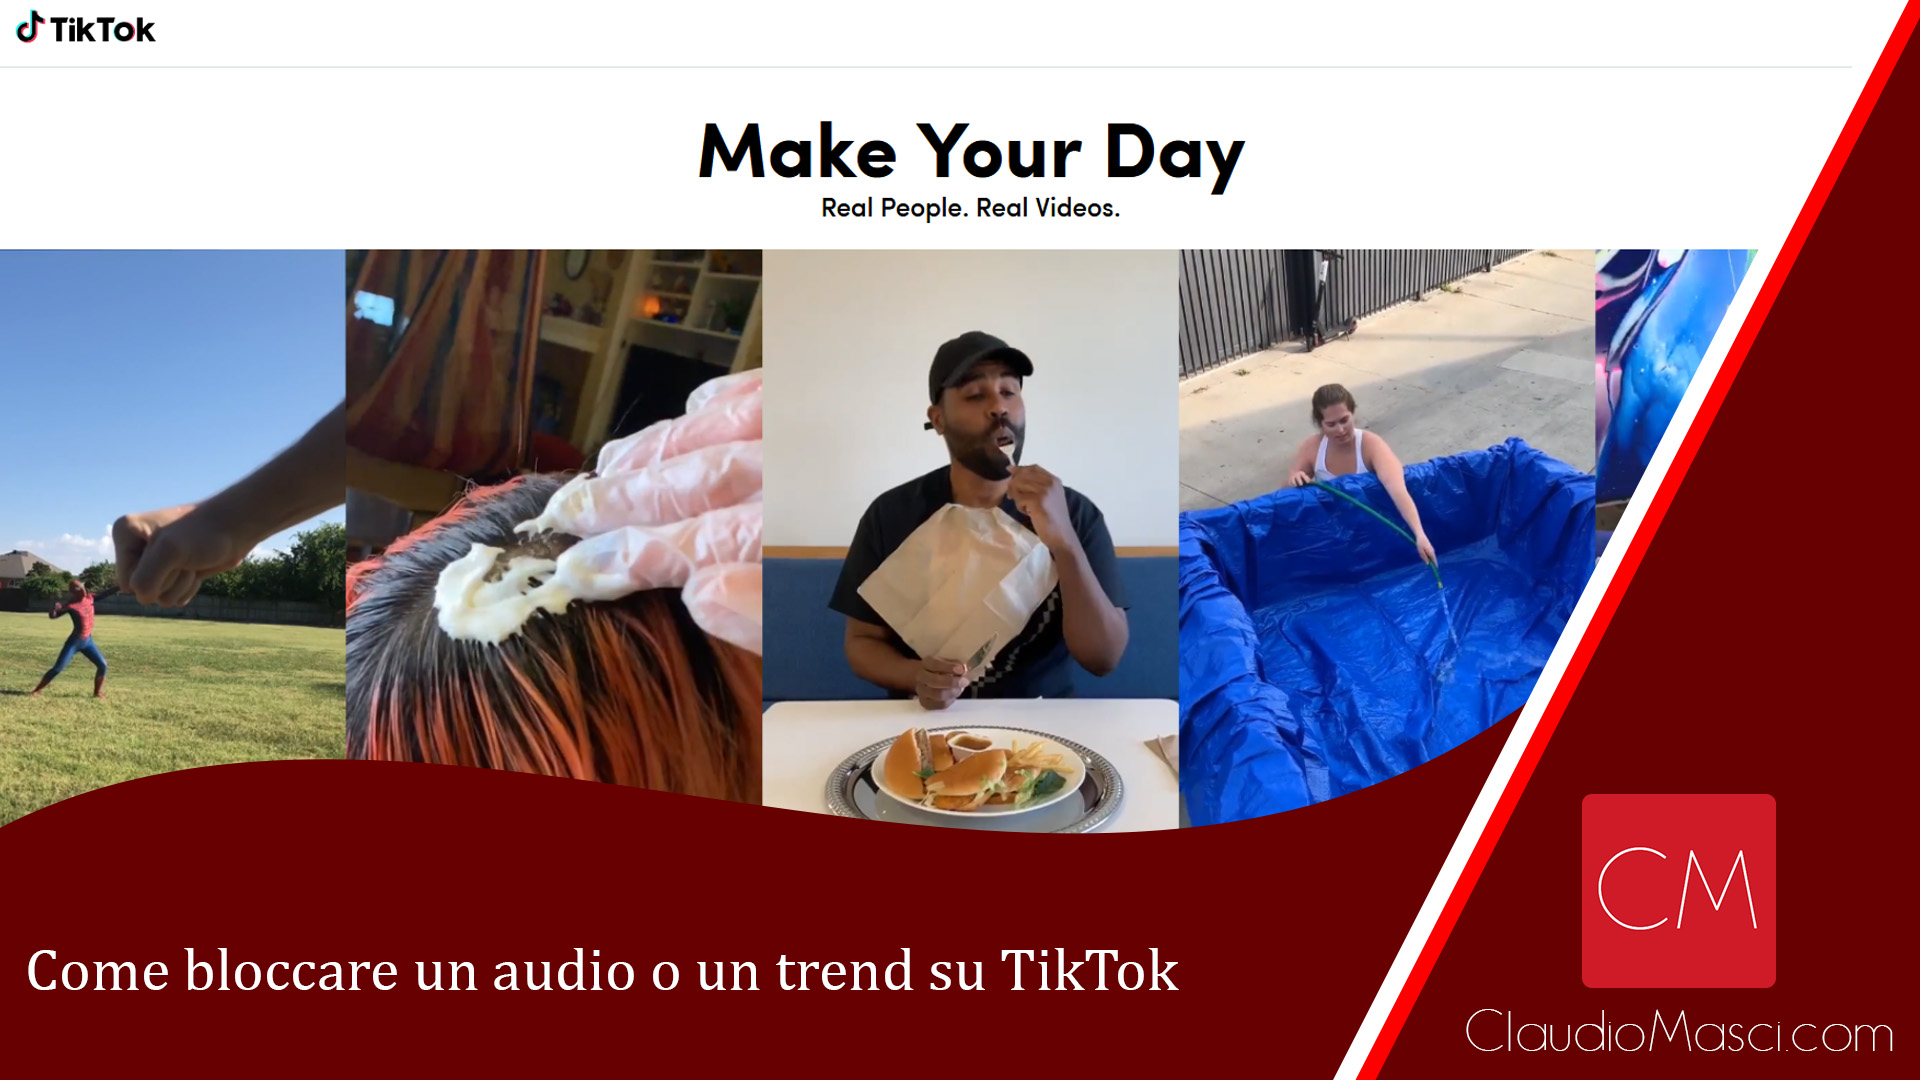 Come bloccare un audio o un trend su TikTok